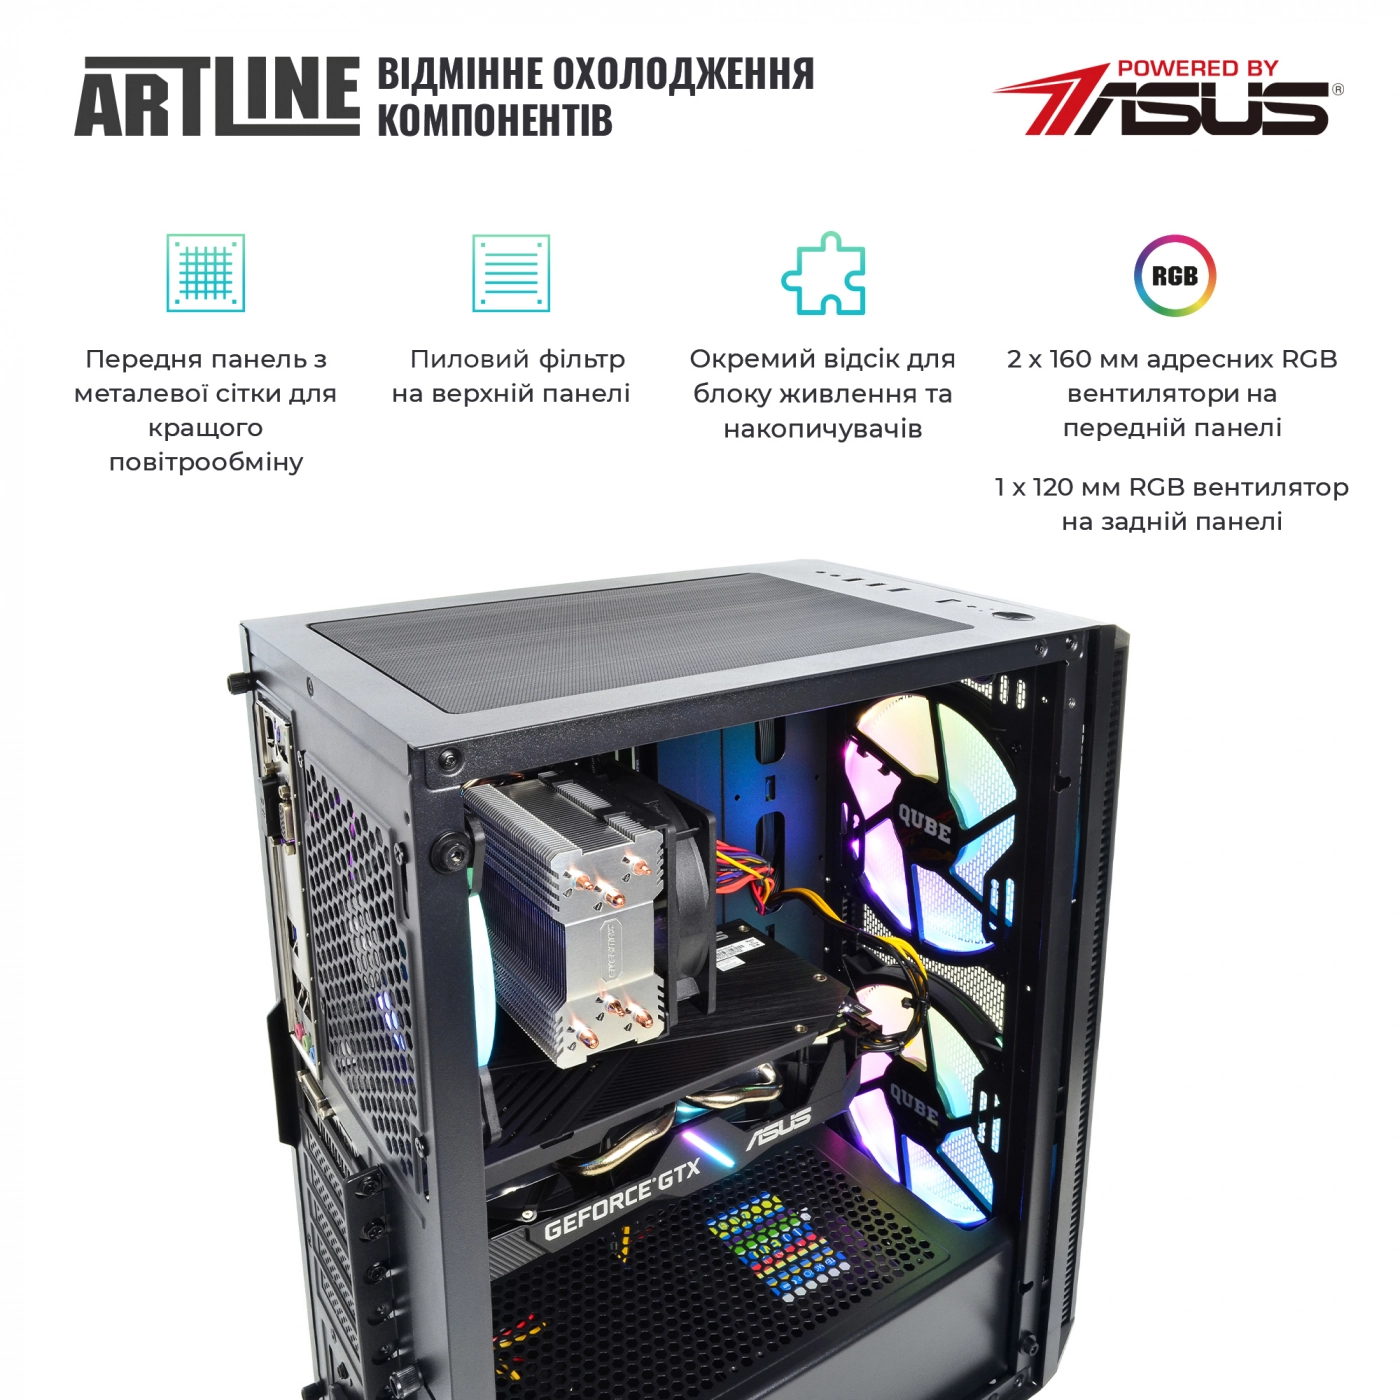 Купить Компьютер ARTLINE Gaming X35v48 - фото 2